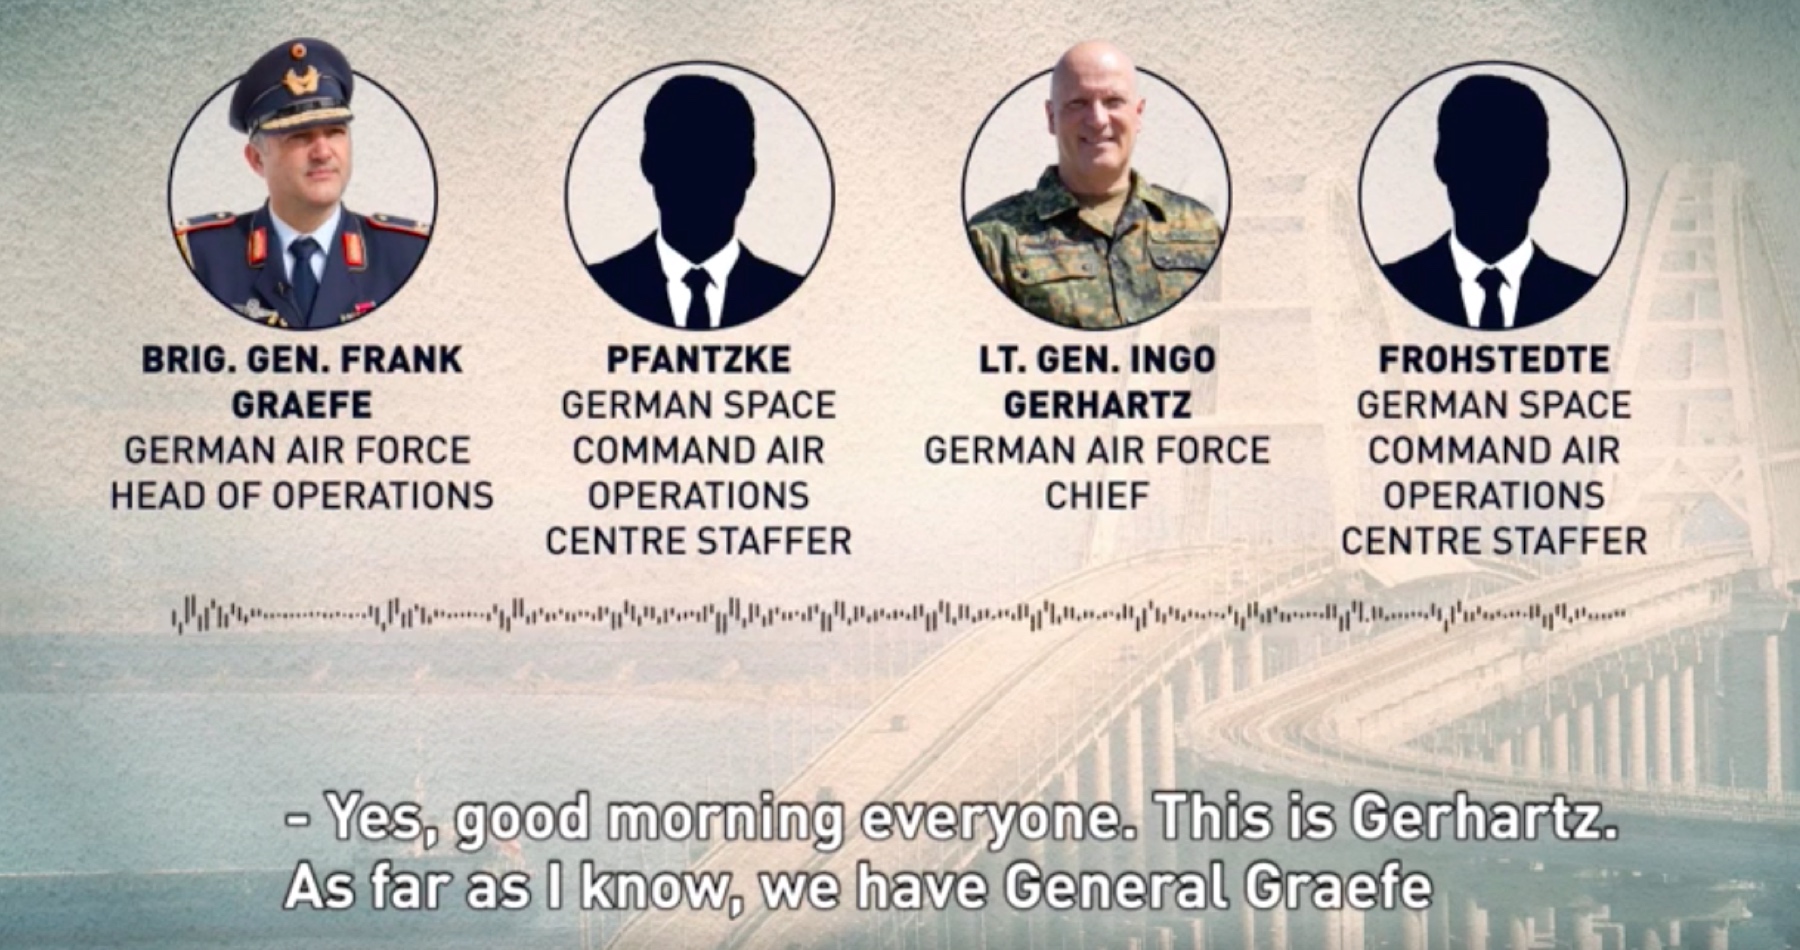 VIDEO: Kompletní přepis rozhovoru německých důstojníků o úderu na Krymský most